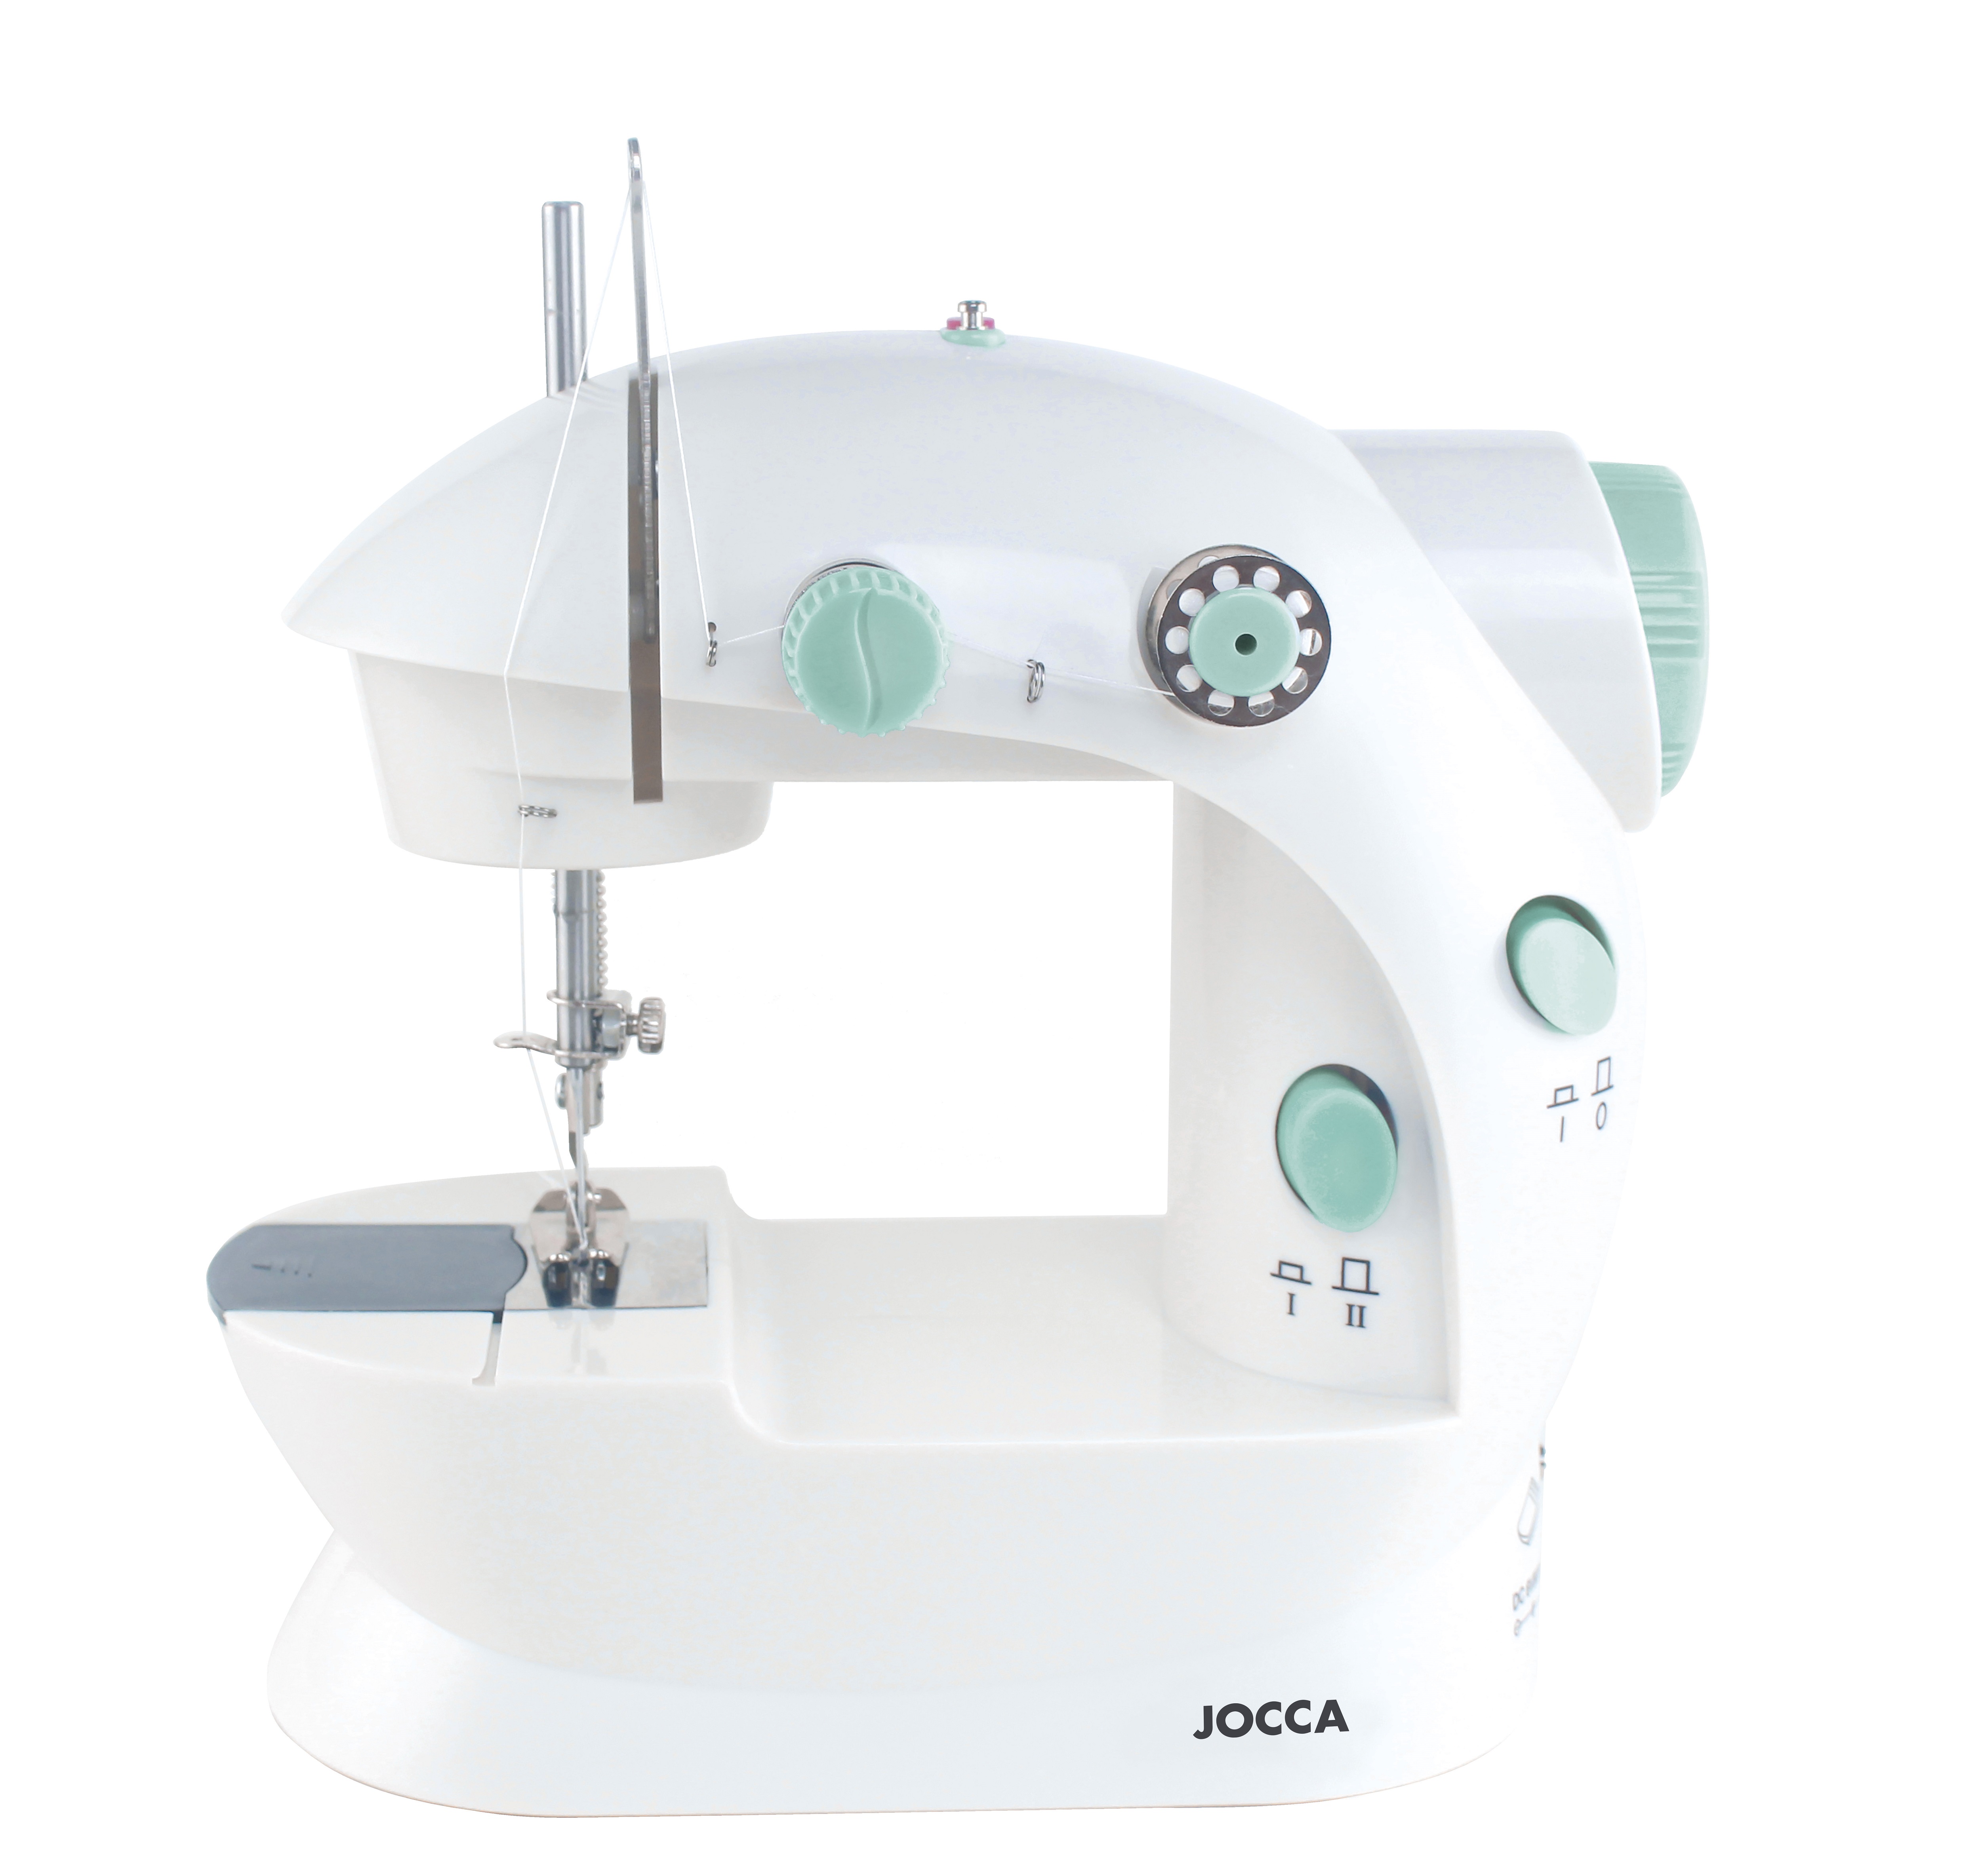 Jocca - Máquina de coser Jocca con diseño compacto, ligero y portátil, funciona a pilas o conectada a la corriente. Incluye pedal y adaptador. Puede seleccionarlo con o sin kit de costura.